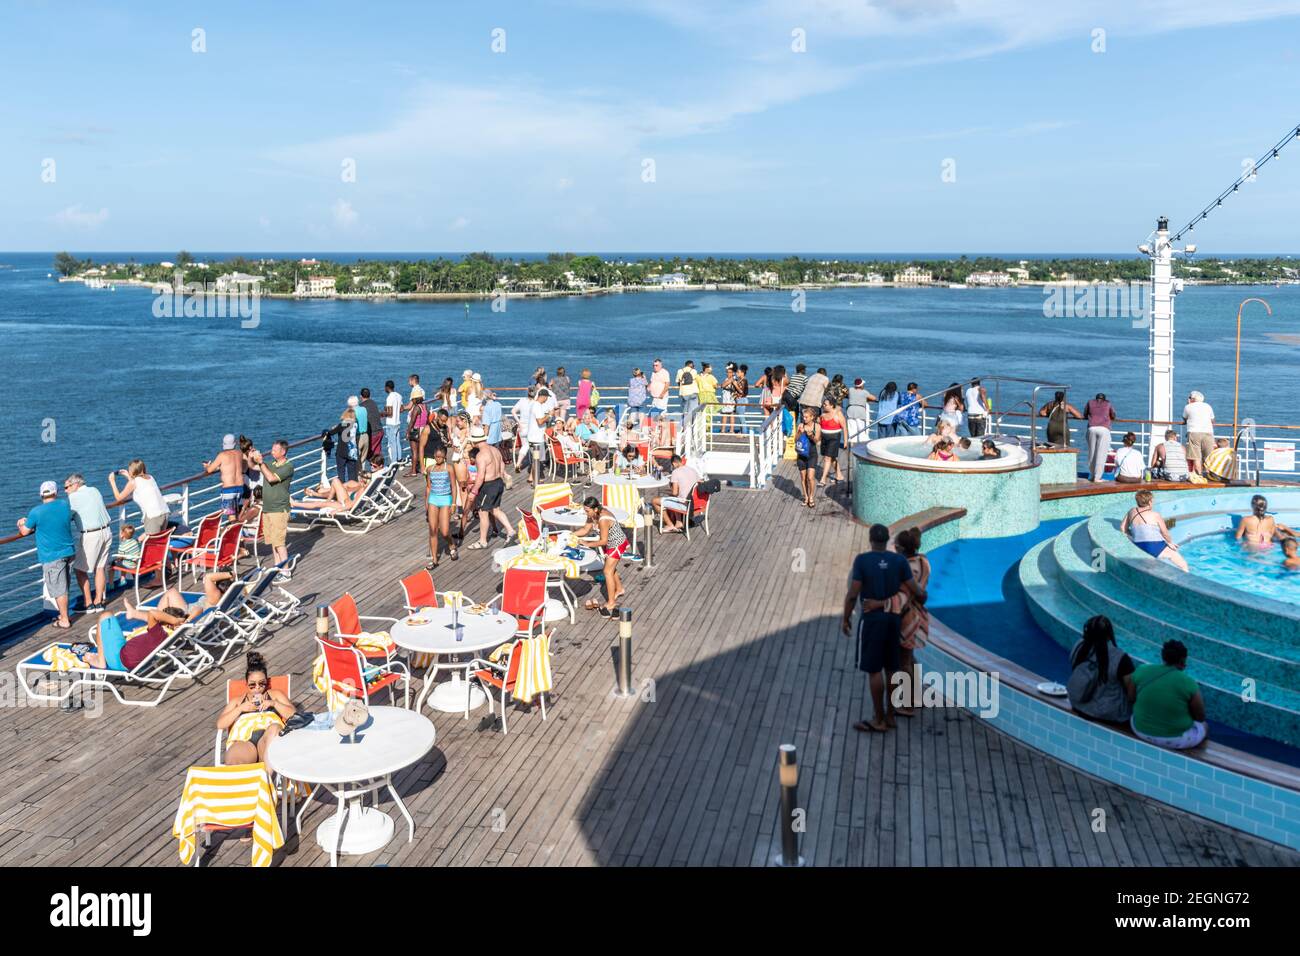 Touristes sur le pont du Grand Celebration Cruise Ship de Bahamas Paradise Cruise Line, Palm Beach, États-Unis Banque D'Images